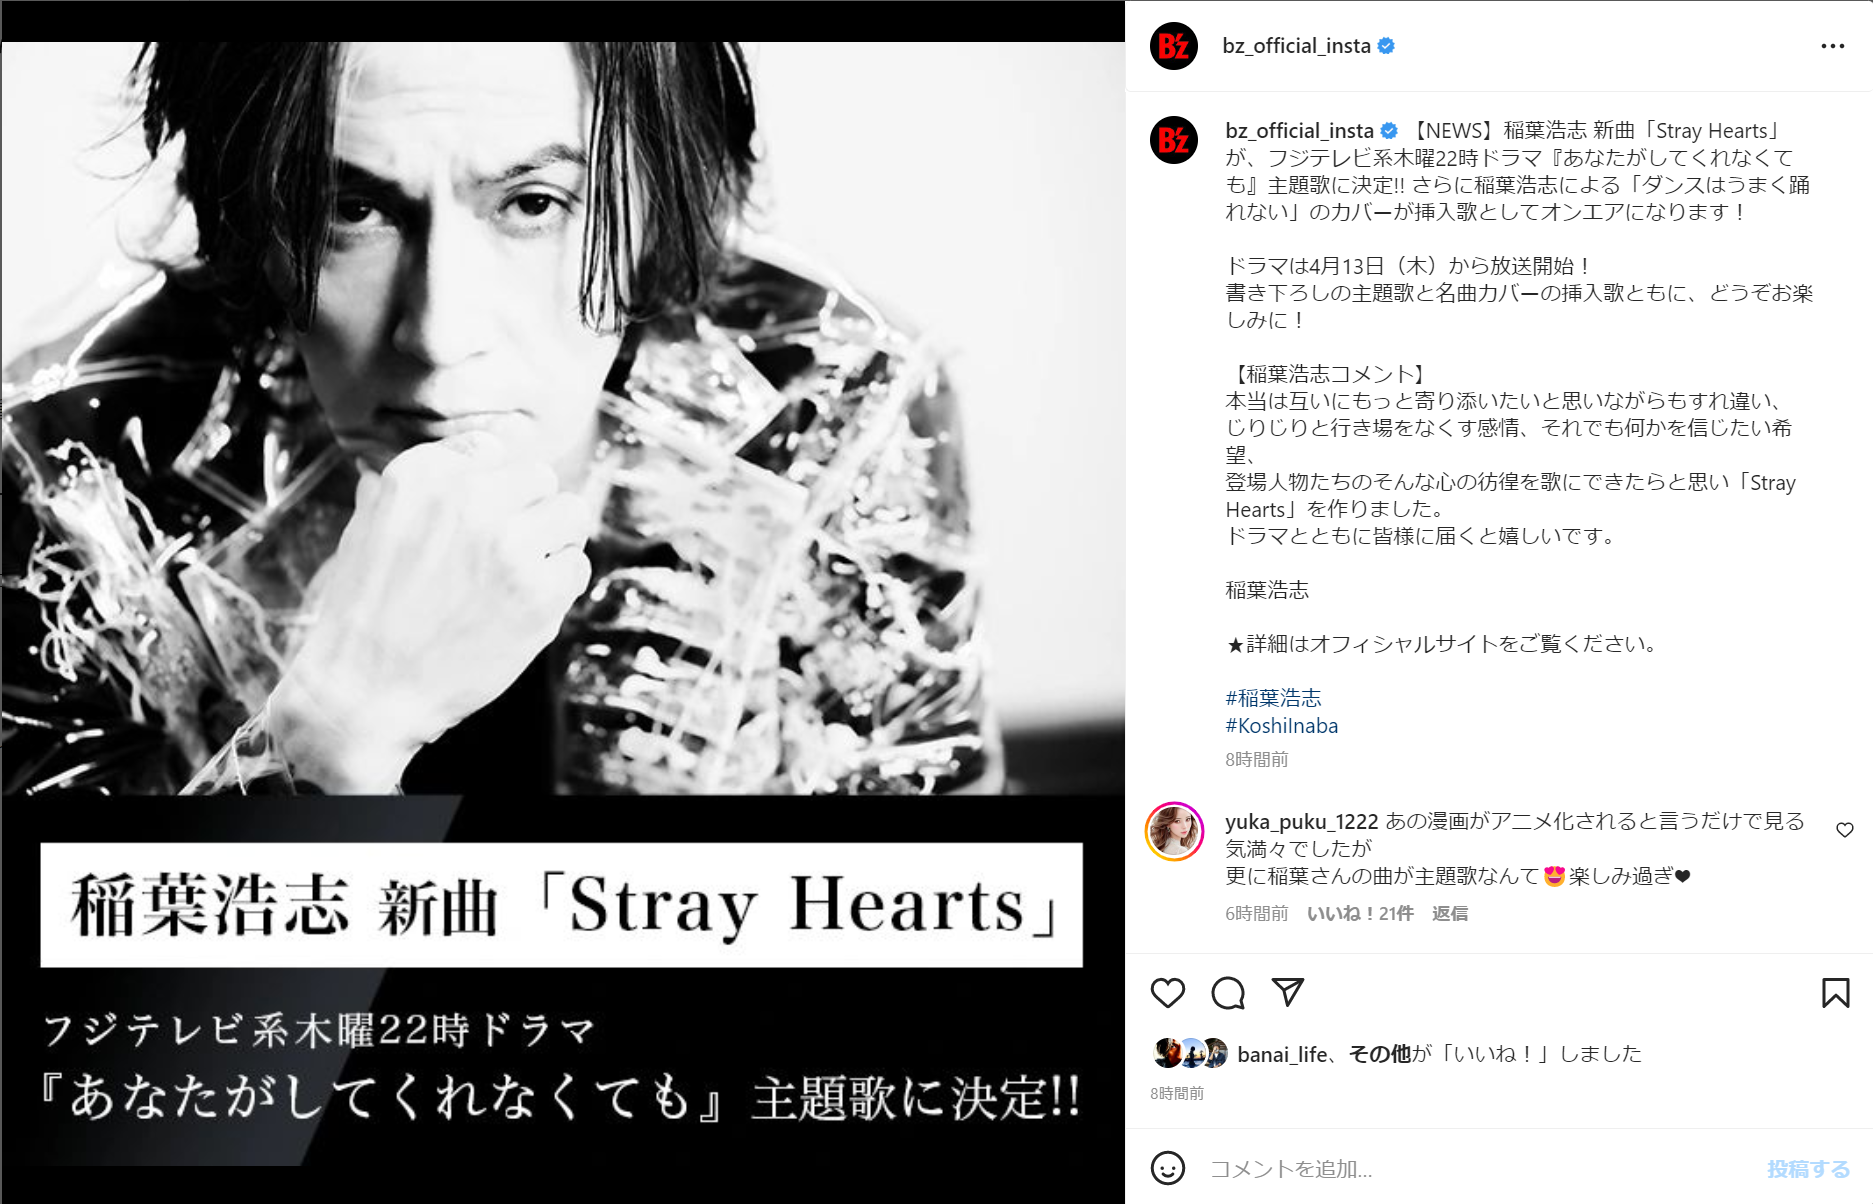 稲葉浩志の新曲「Stray Hearts」が、フジテレビ系木曜22時ドラマ『あなたがしてくれなくても』の主題歌に決定したことを告知するInstagram投稿